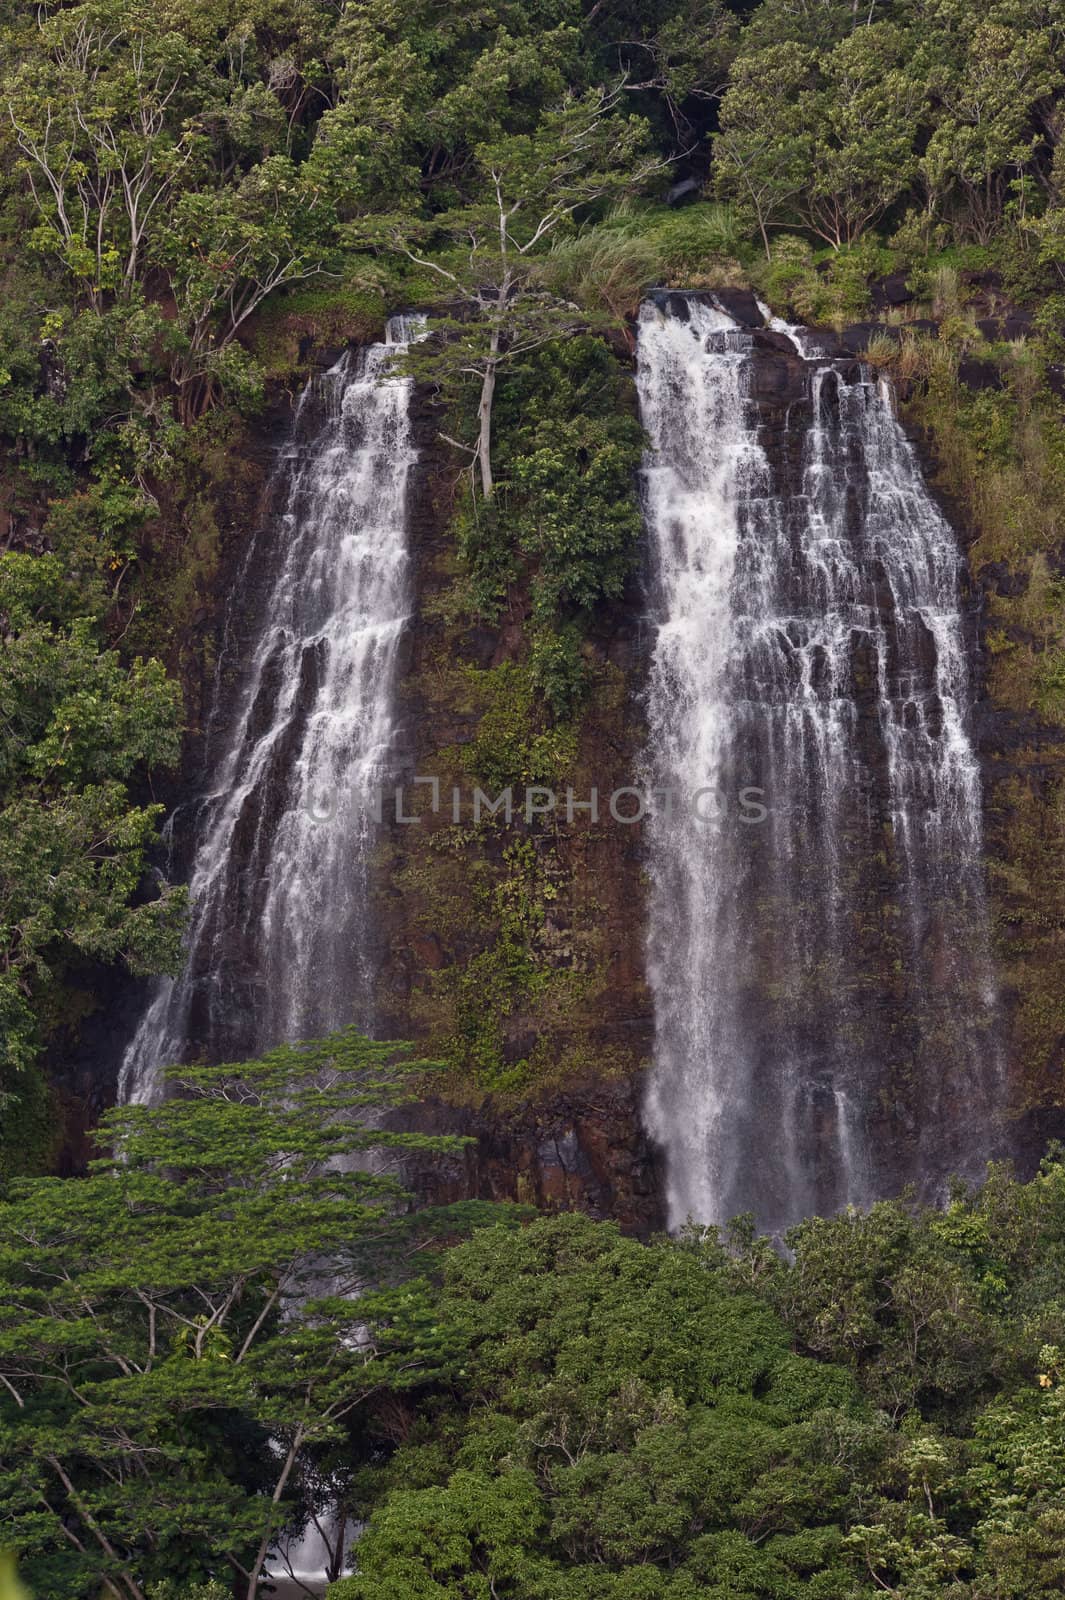 'Opaeka'a Falls on the island of Kauai, Hawaii.